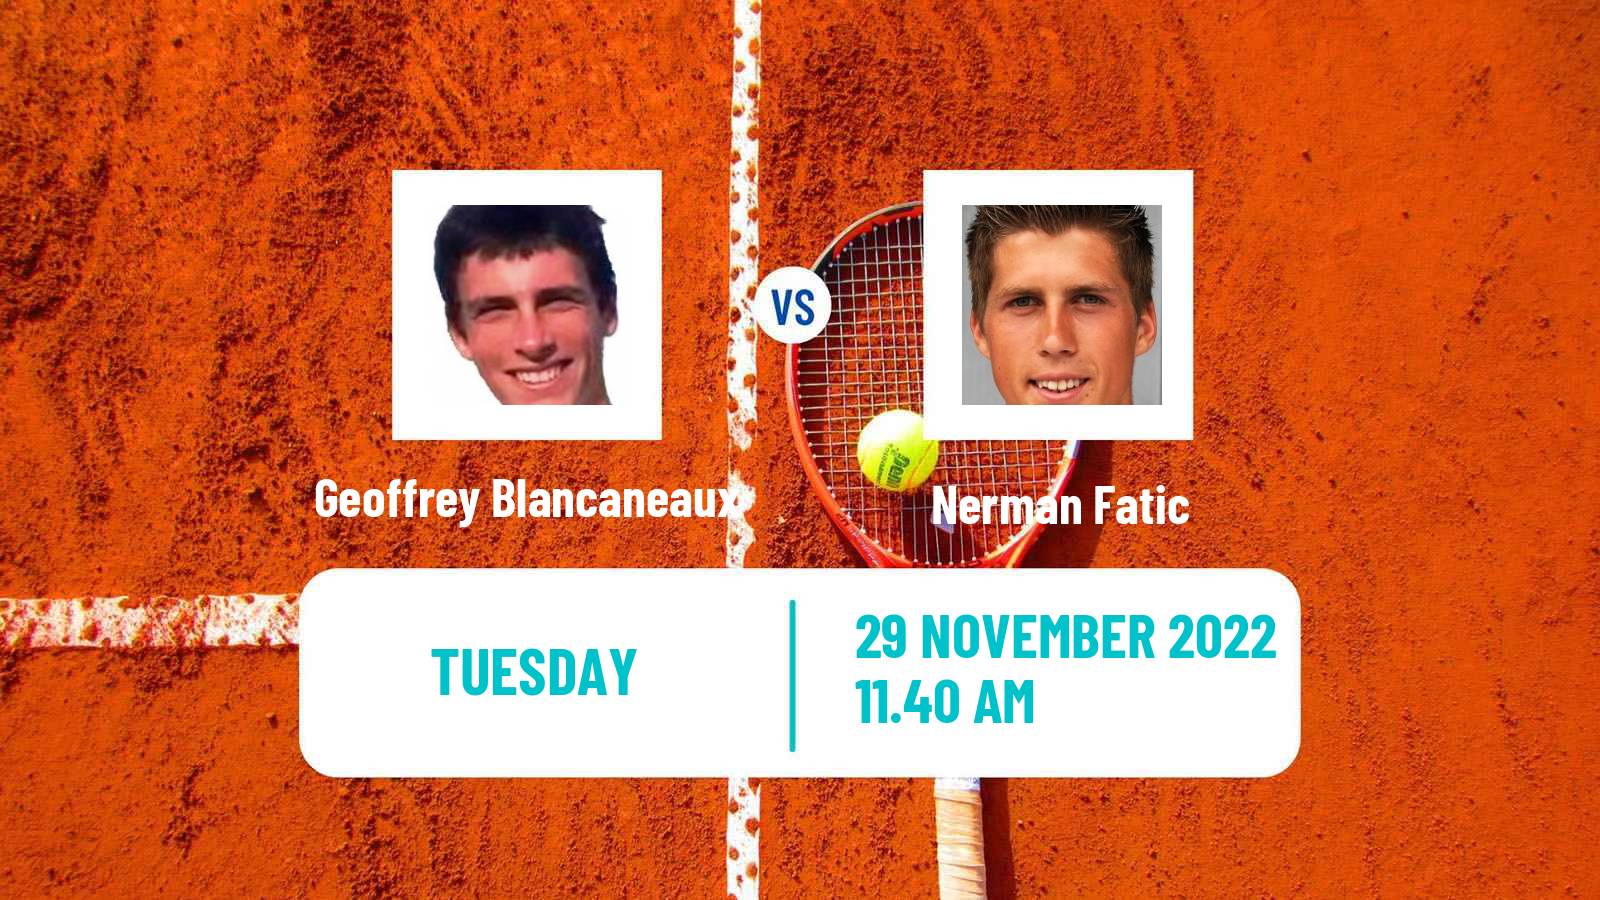 Tennis ATP Challenger Geoffrey Blancaneaux - Nerman Fatic